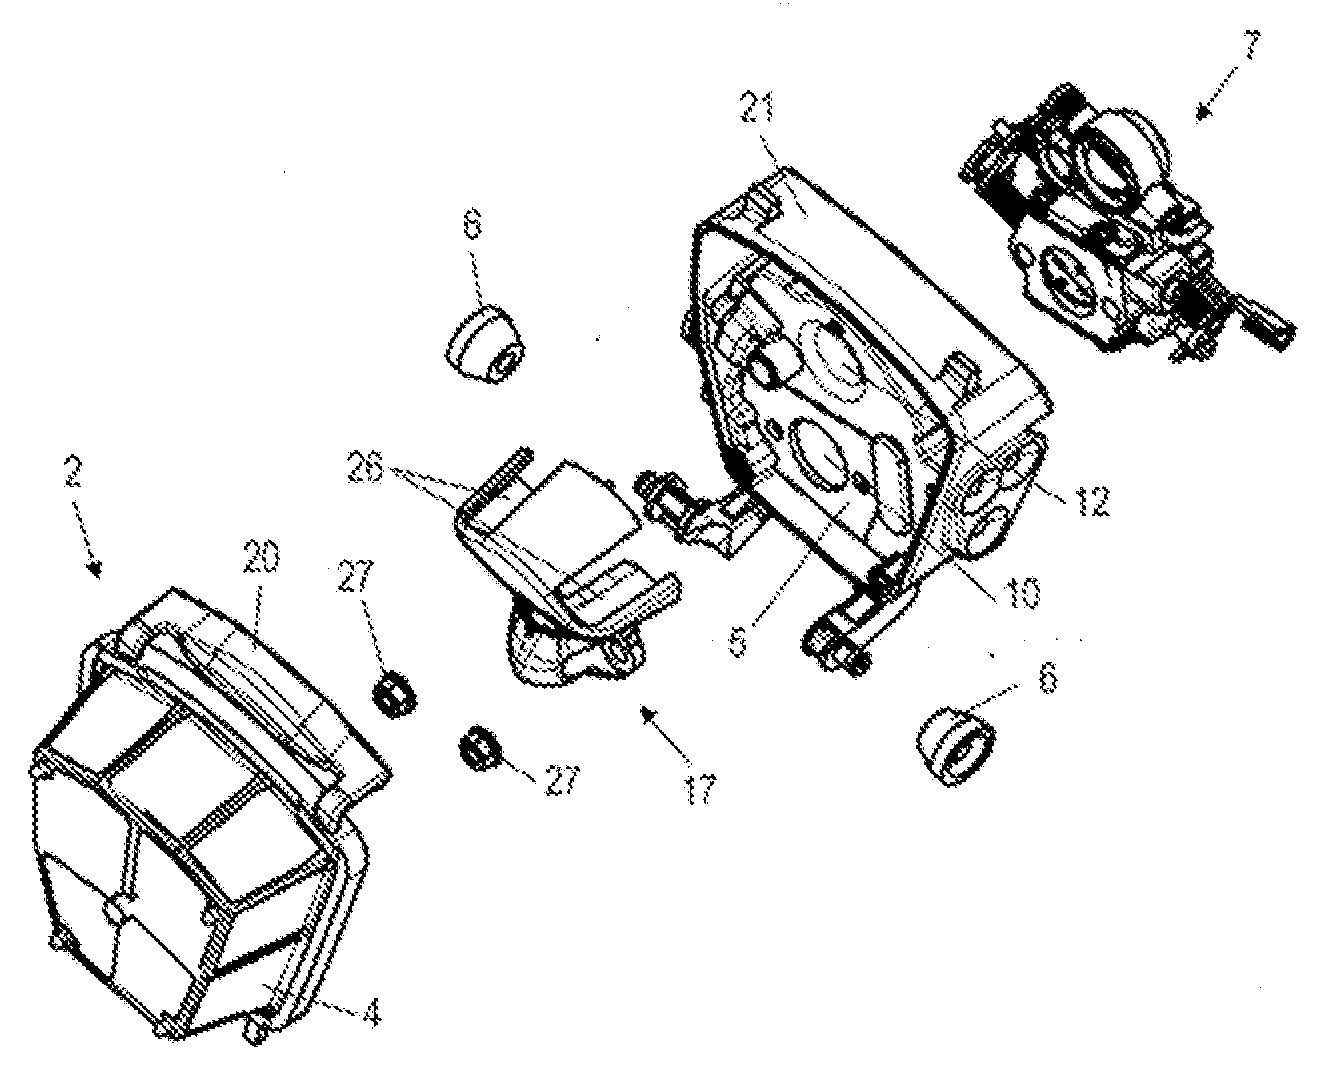 Air filter arrangement for an internal combustion engine